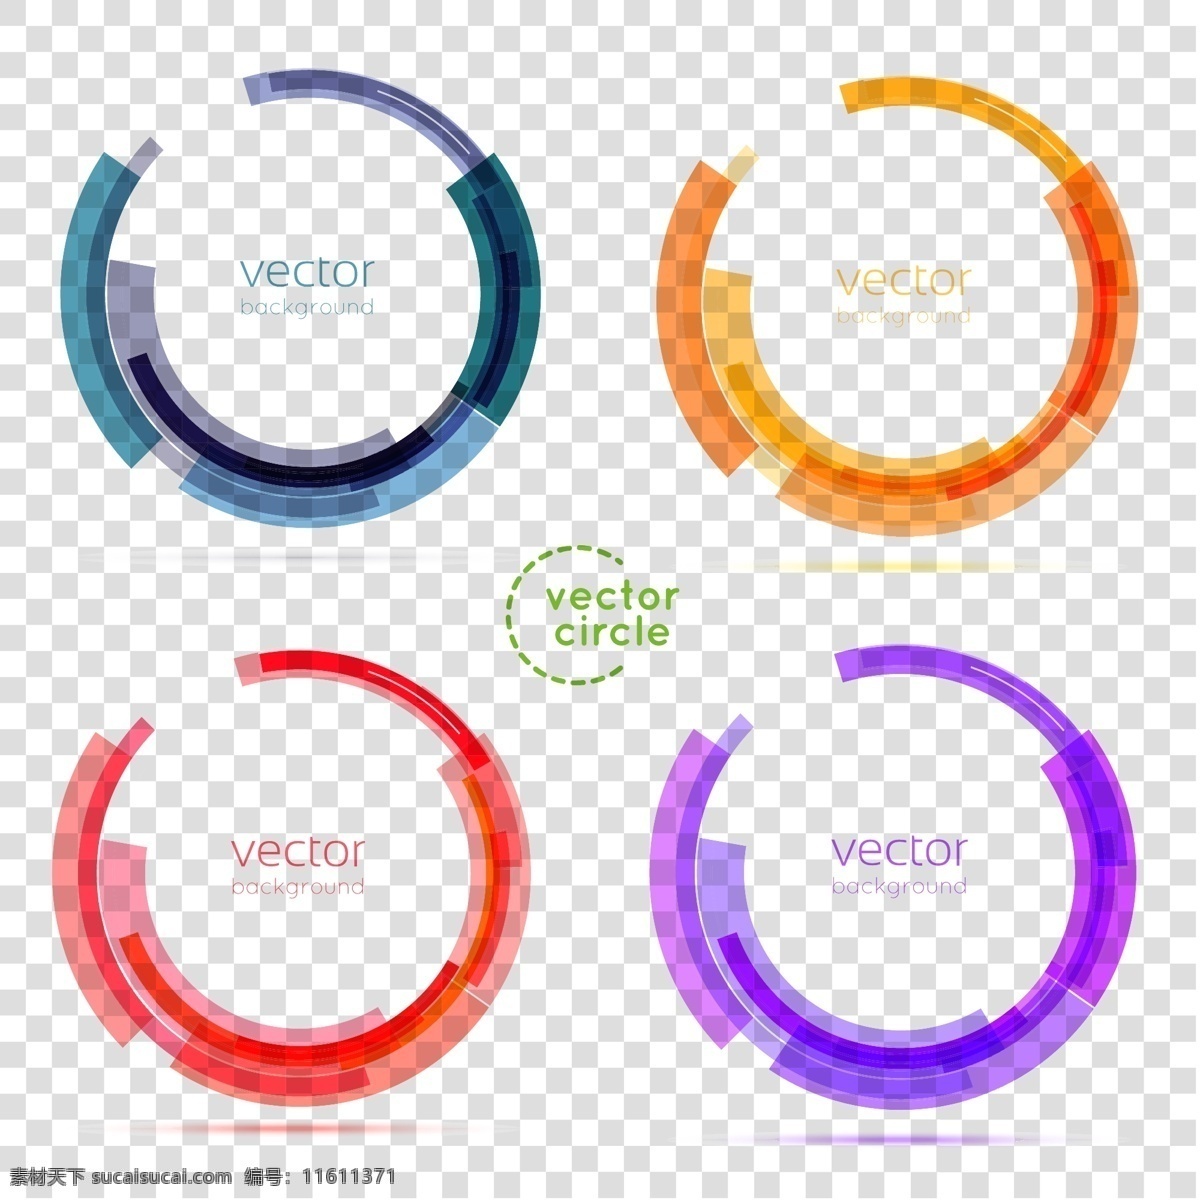 圆圈 创意圆圈图片 创意 圆圈红色 橙色 紫色 蓝色 底纹边框 背景底纹